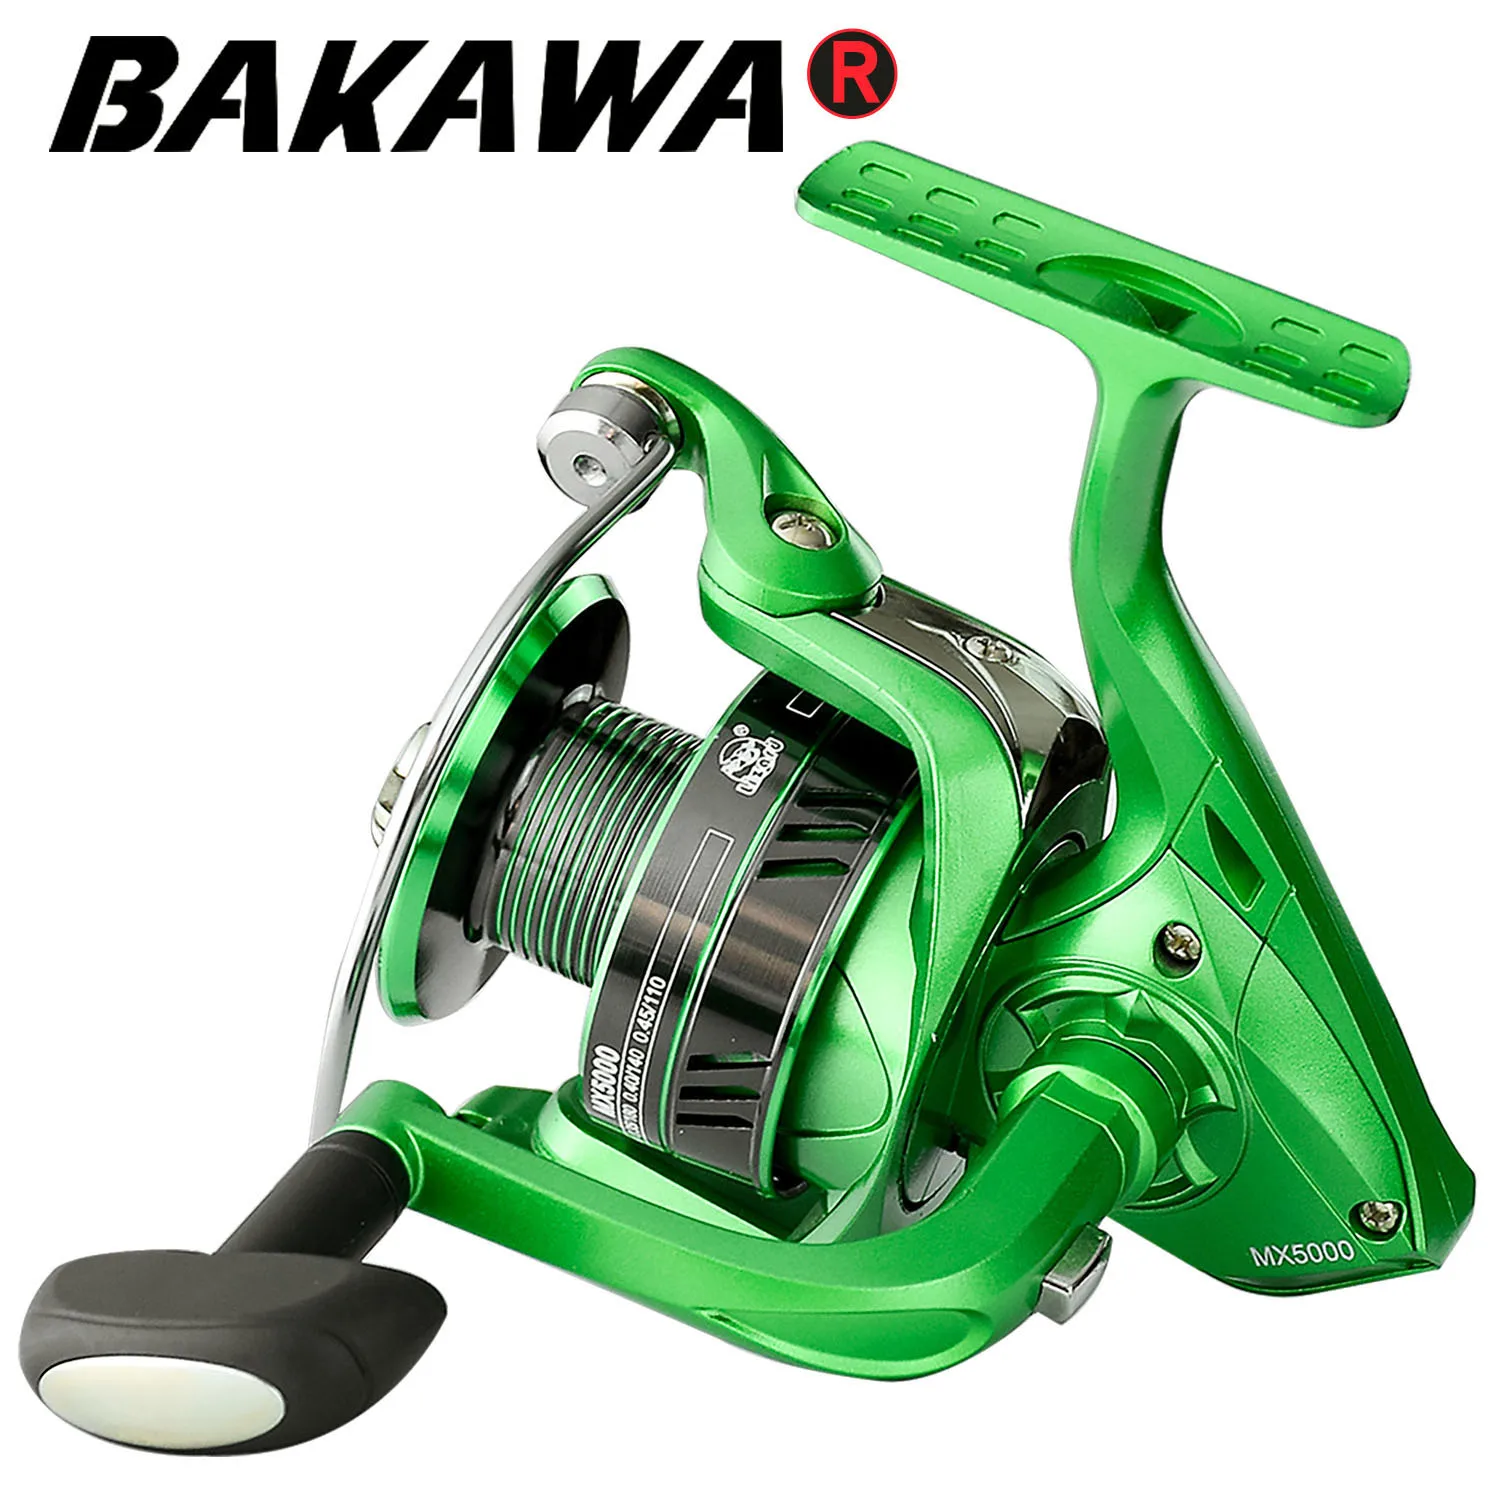 

BAKAWA Spinning Fishing Reel Pesca 1000-7000 Series Metal Spool 5.2:1 Speed ratio 8-12kg Max Drag Carp Wheel Saltwater Tackle